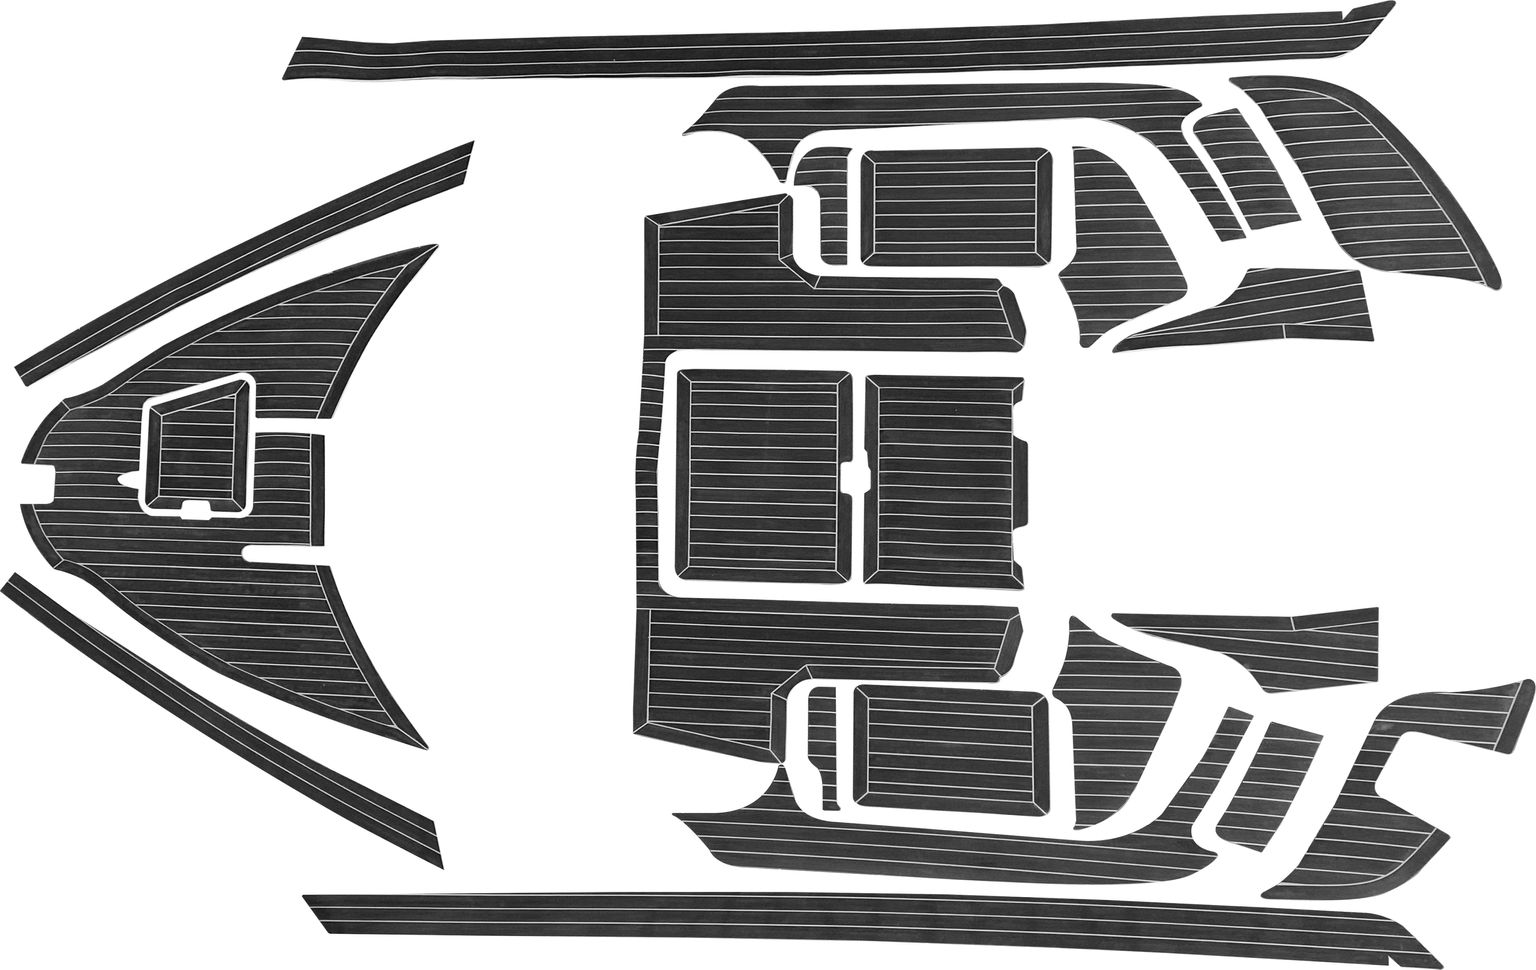 Комплект палубного покрытия для Yamaha CR-27, тик черный, белая полоса, с обкладкой, Marine Rocket teak_CR27_black_2 комплект палубного покрытия для феникс 600ht тик классический с обкладкой marine rocket teak 600ht classic 2